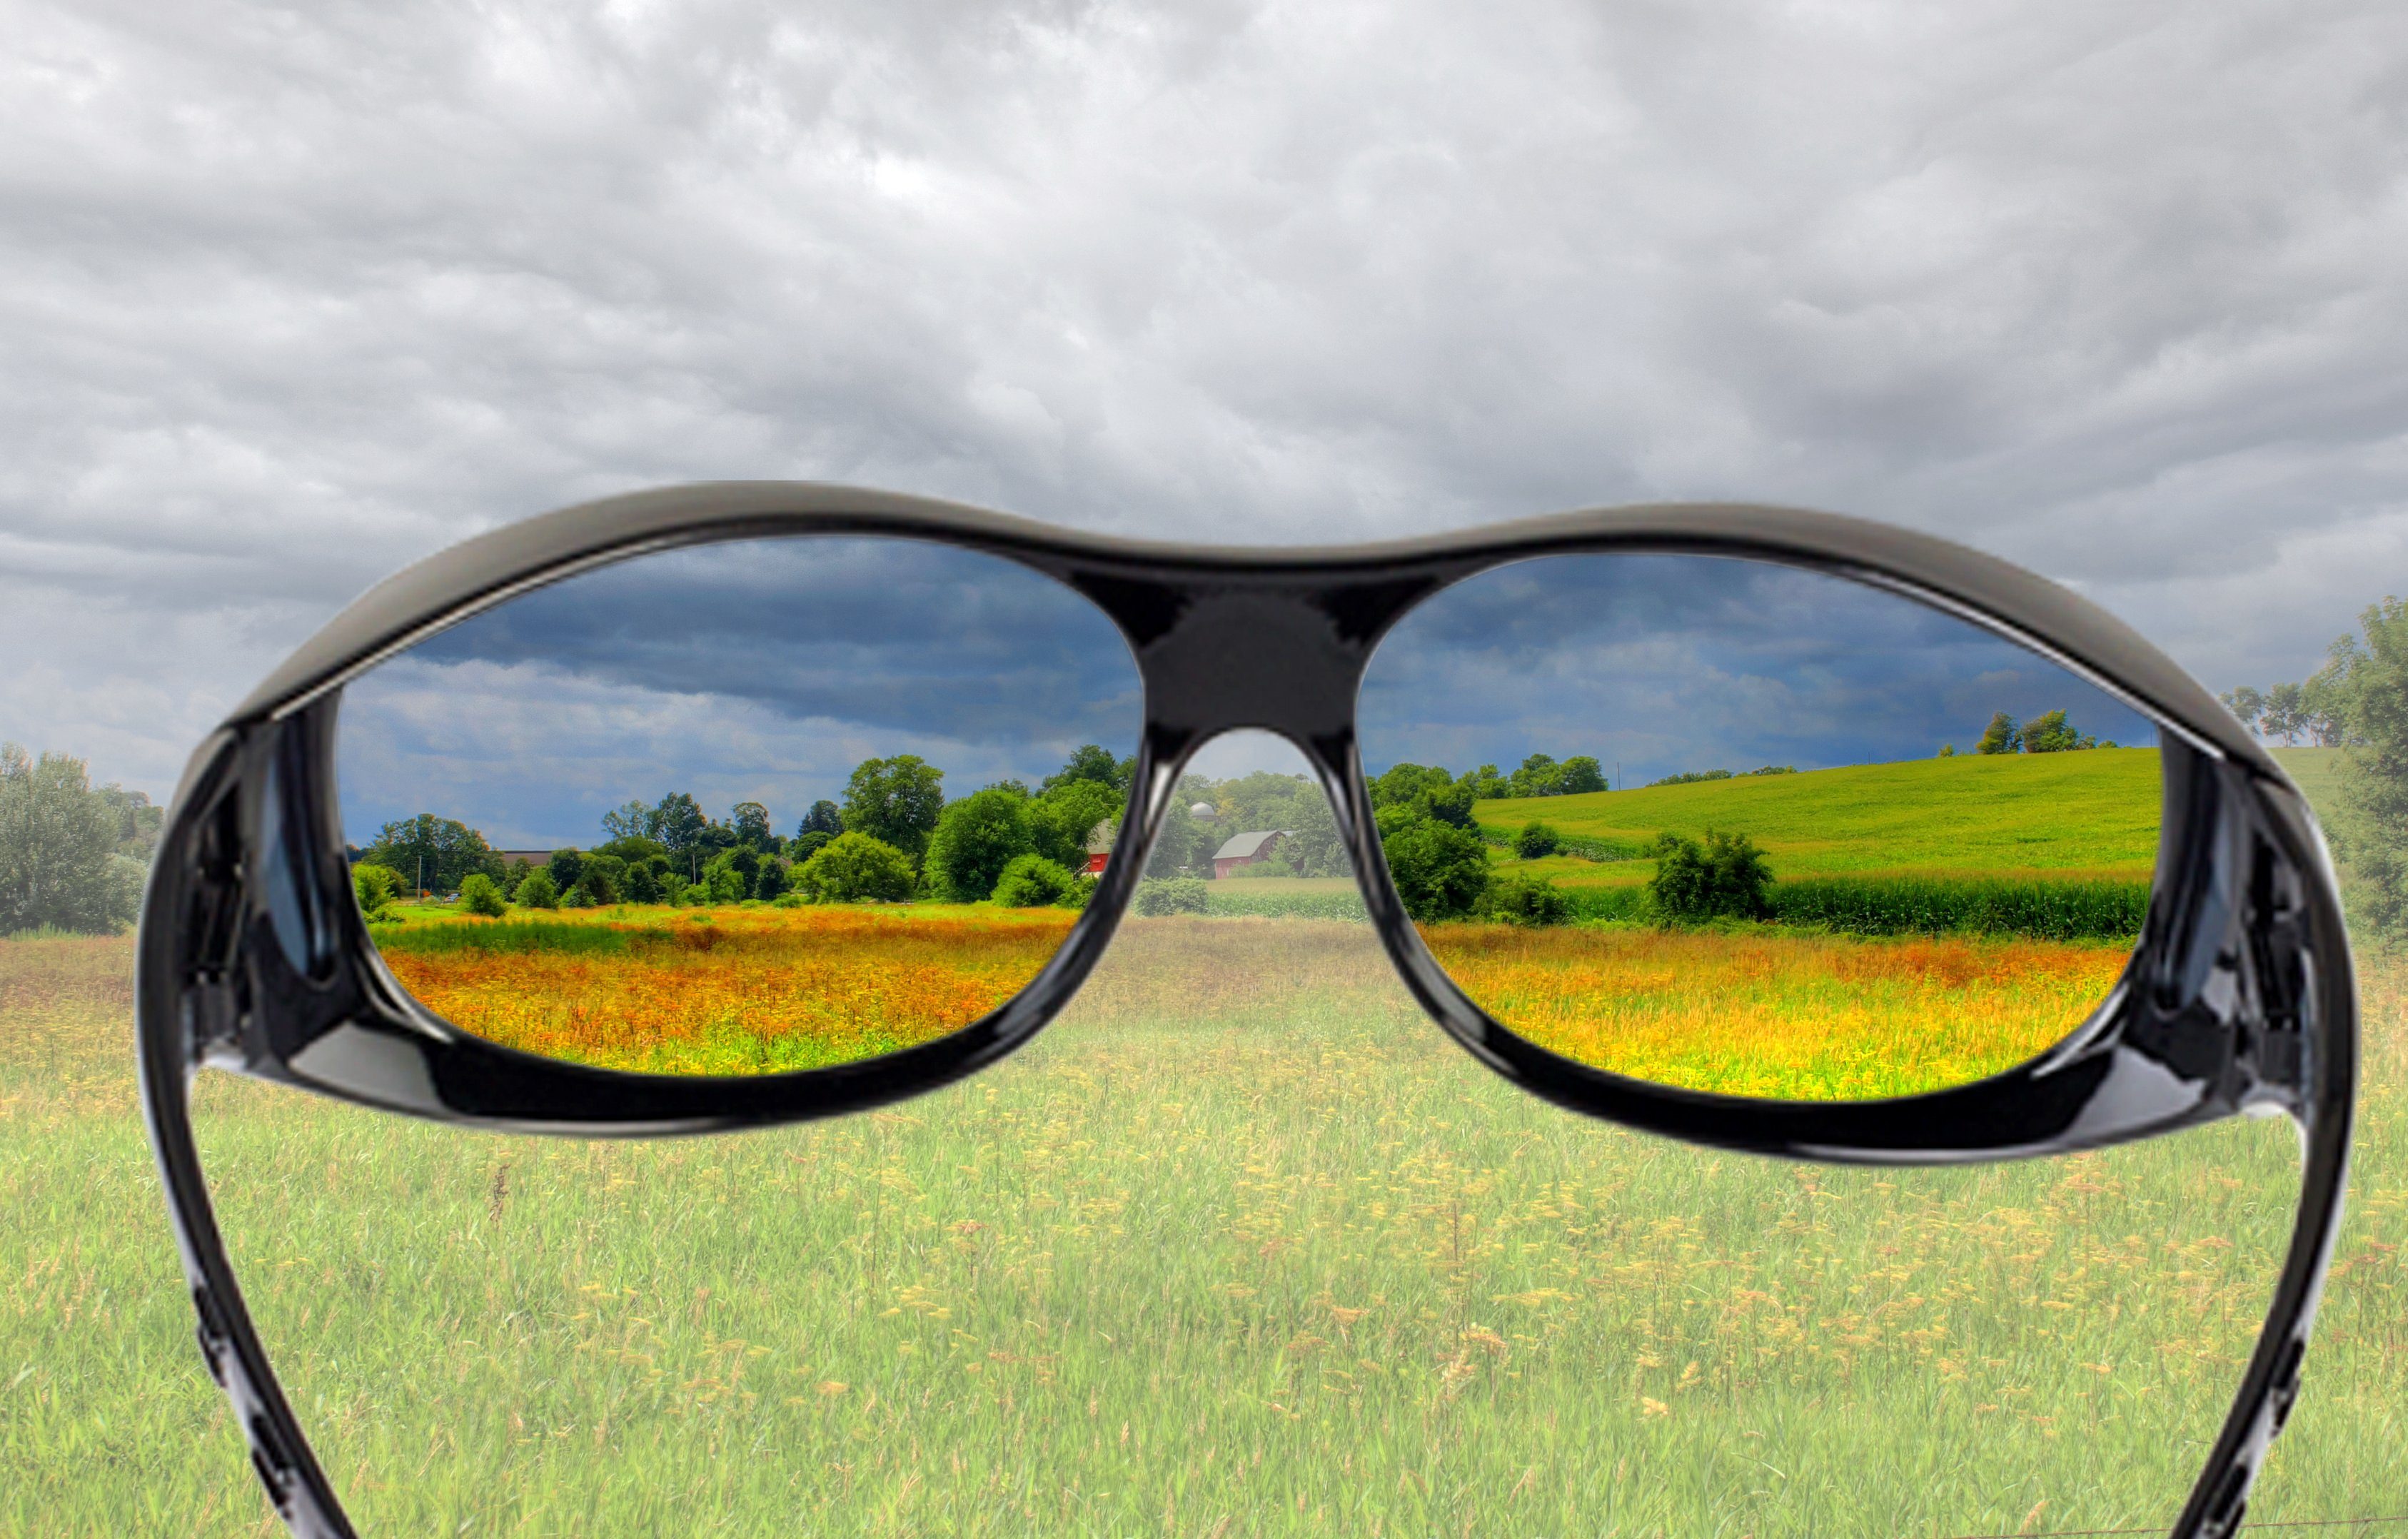 CLASSIC polarisiert 400 EDITION Überbrille FALINGO Sonnenüberbrille Überzieh Überziehbrille Schwarz UV Sonnenbrille Sonnenbrille